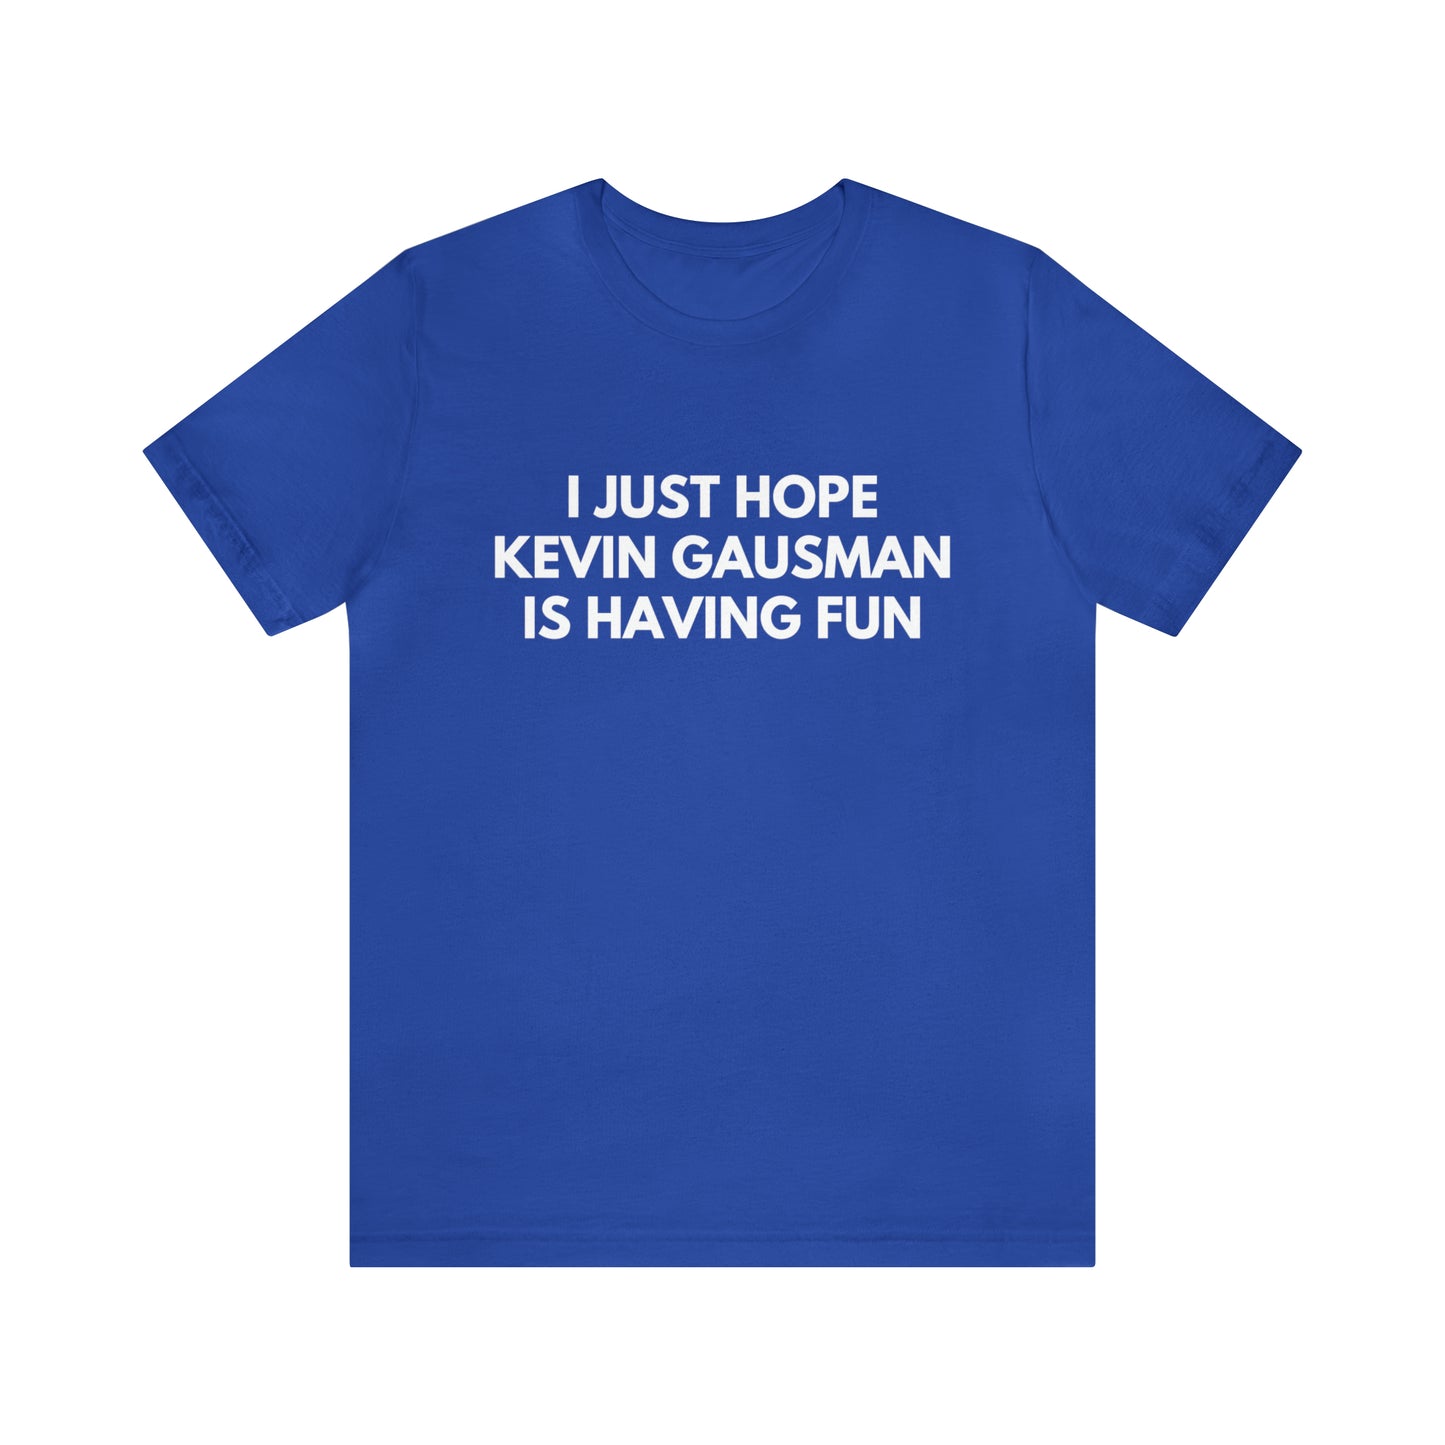 Kevin Gausman Having Fun - Unisex T-shirt